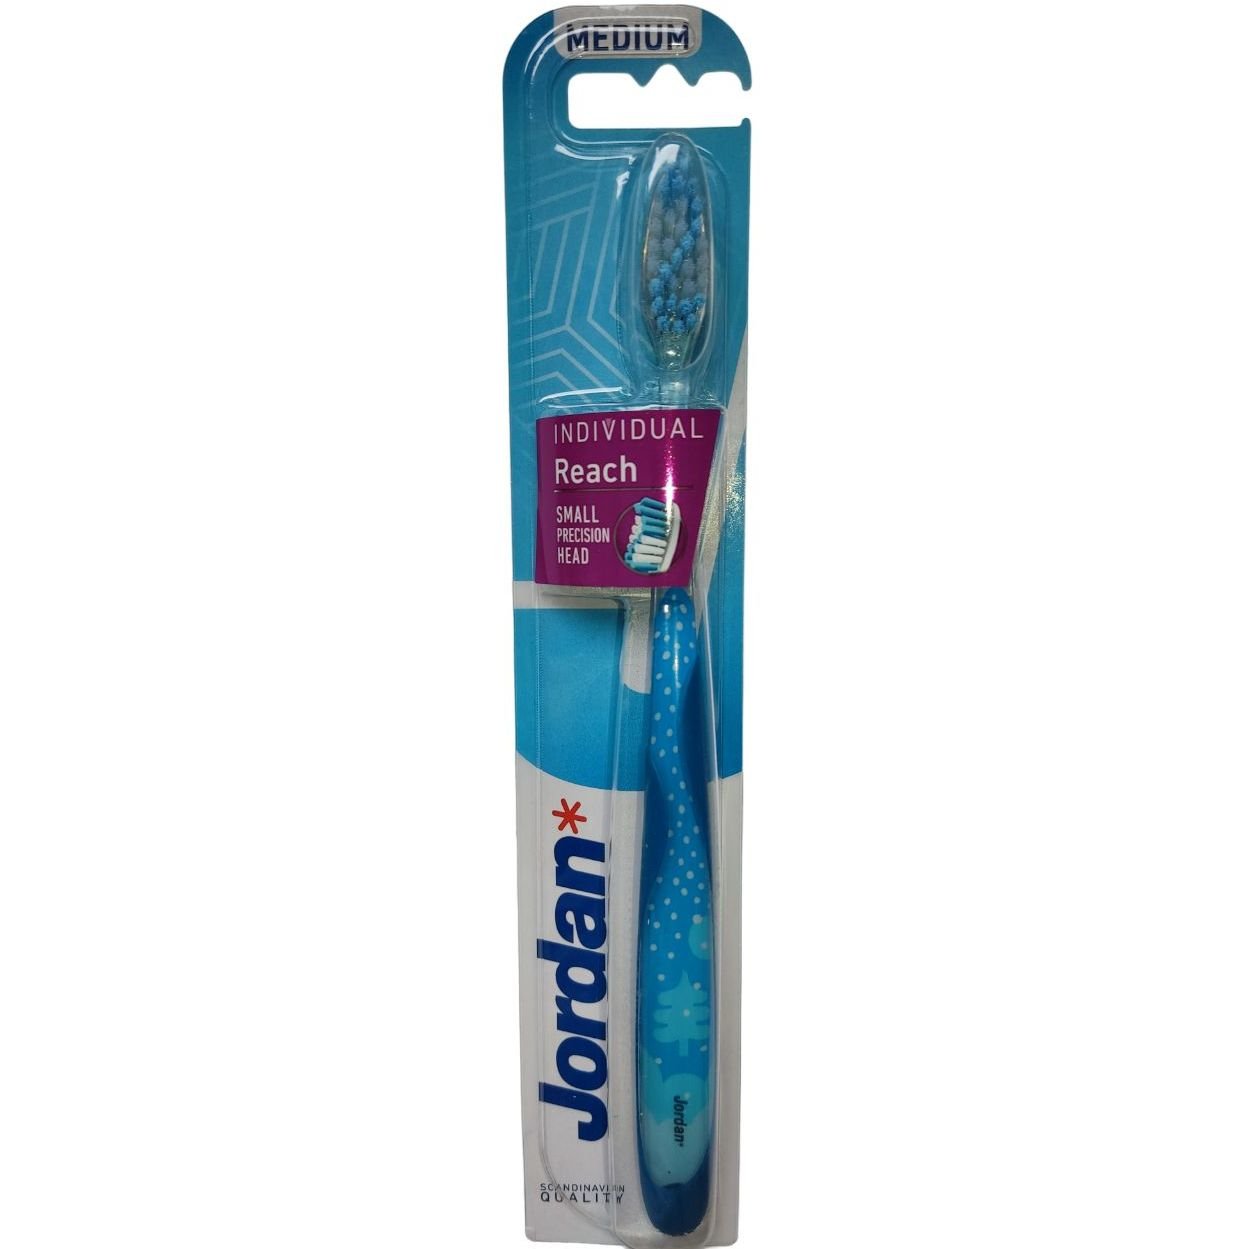 Дизайнерська зубна щітка Jordan Individual Reach середньої жорсткості синьо-блакитна в крапочку - фото 1